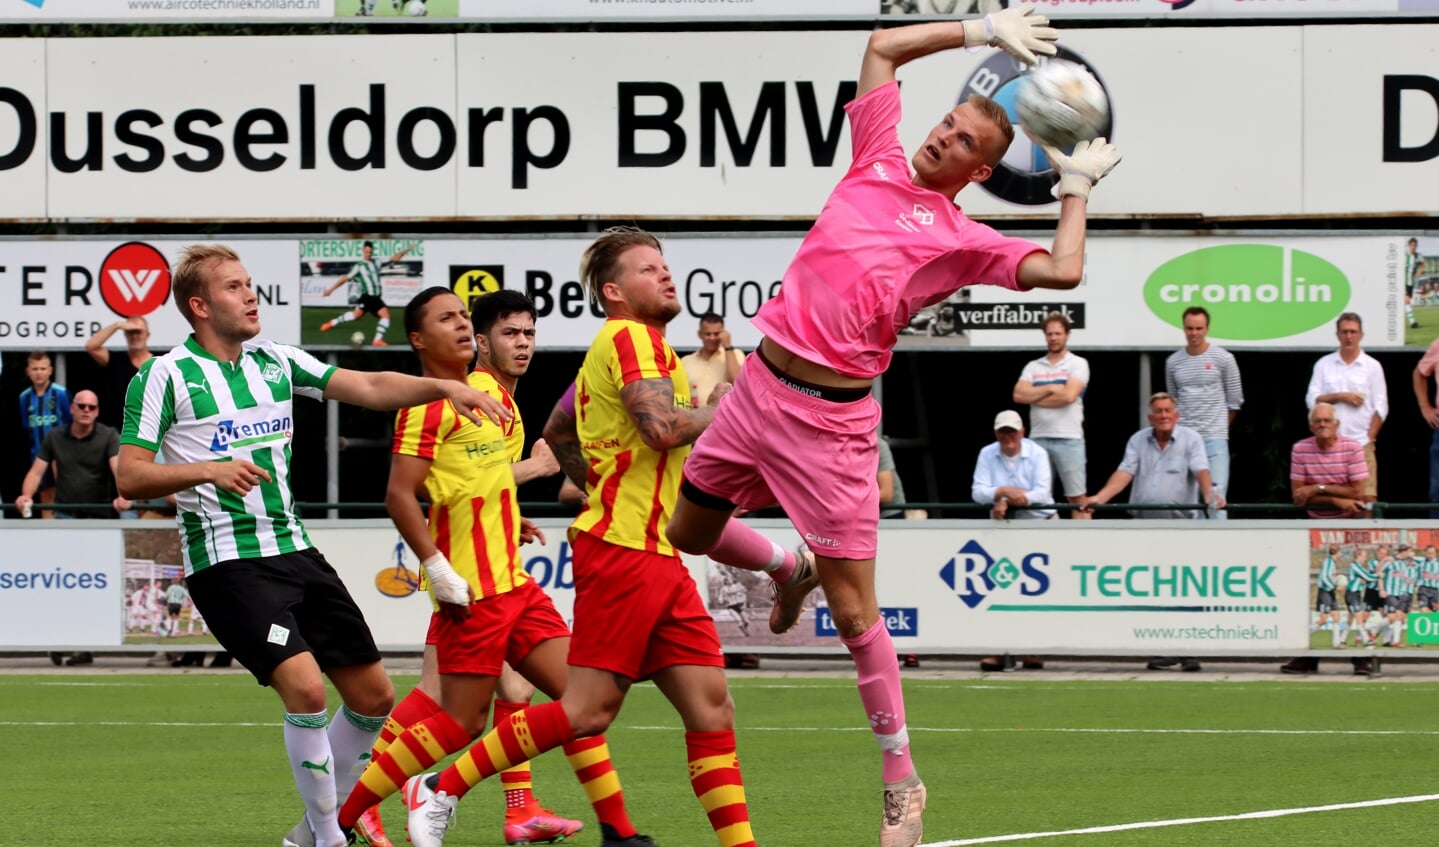 Tim Noordman plukt weer als vanouds ballen uit de lucht voor Go-Ahead Kampen. Foto Helmich Lubberts.